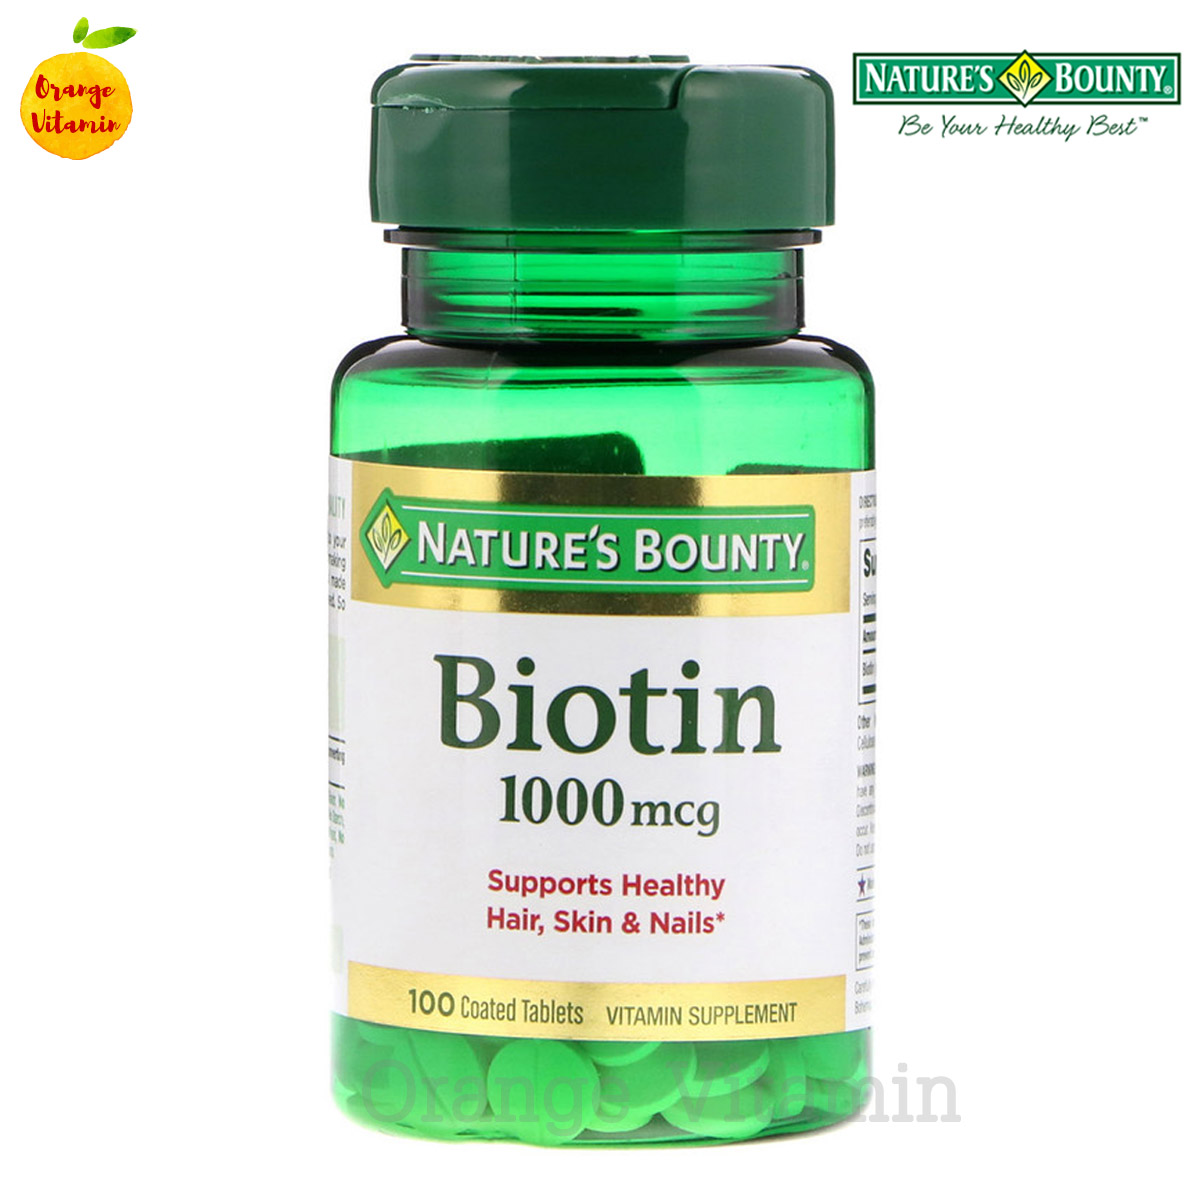 ไบโอติน เนเจอร์ส บาวน์ตี้ Nature's Bounty, Biotin, 1,000 mcg, 100 Coated Tablets